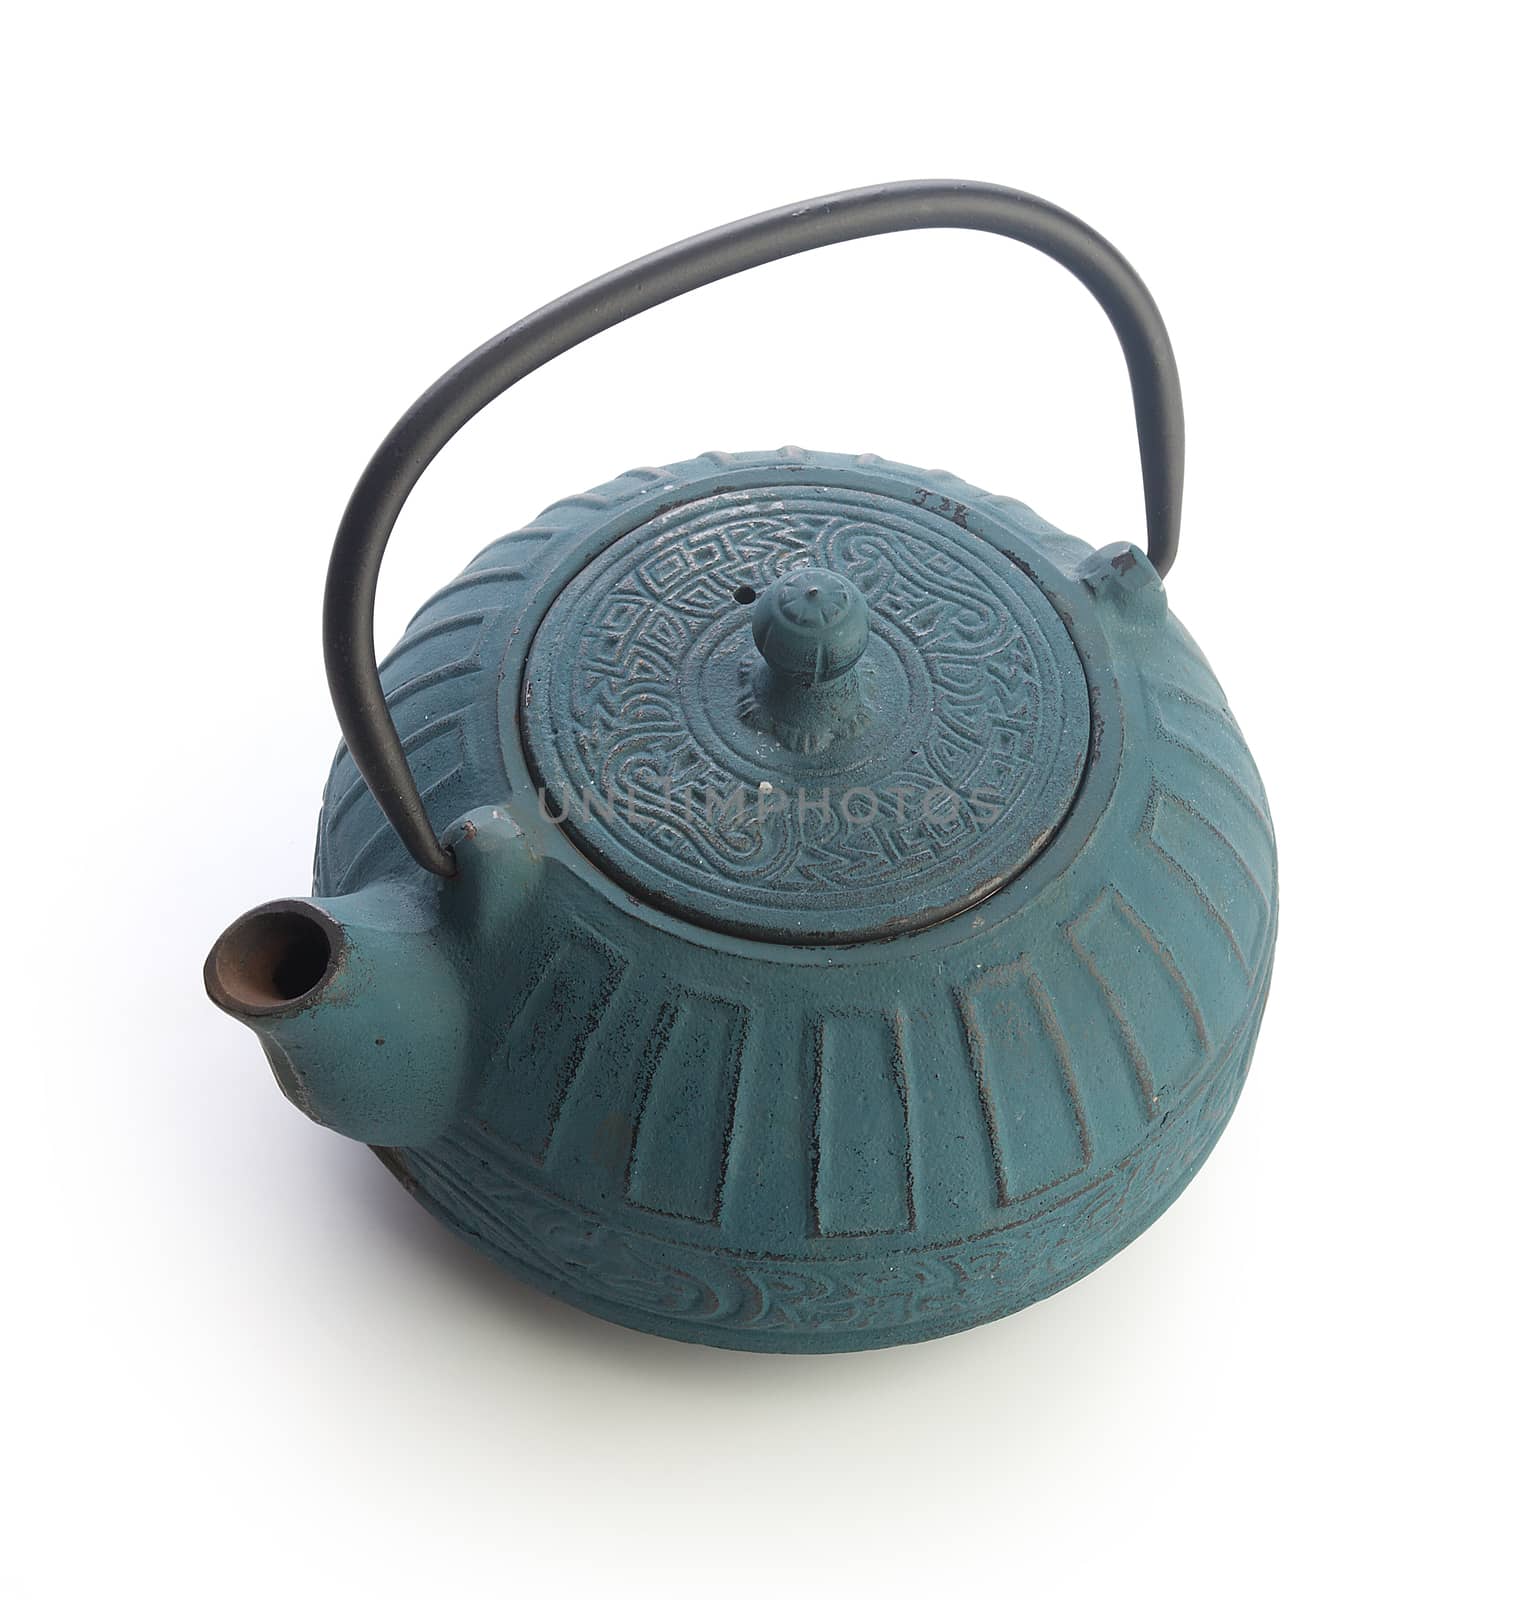 Iron teapot by Angorius